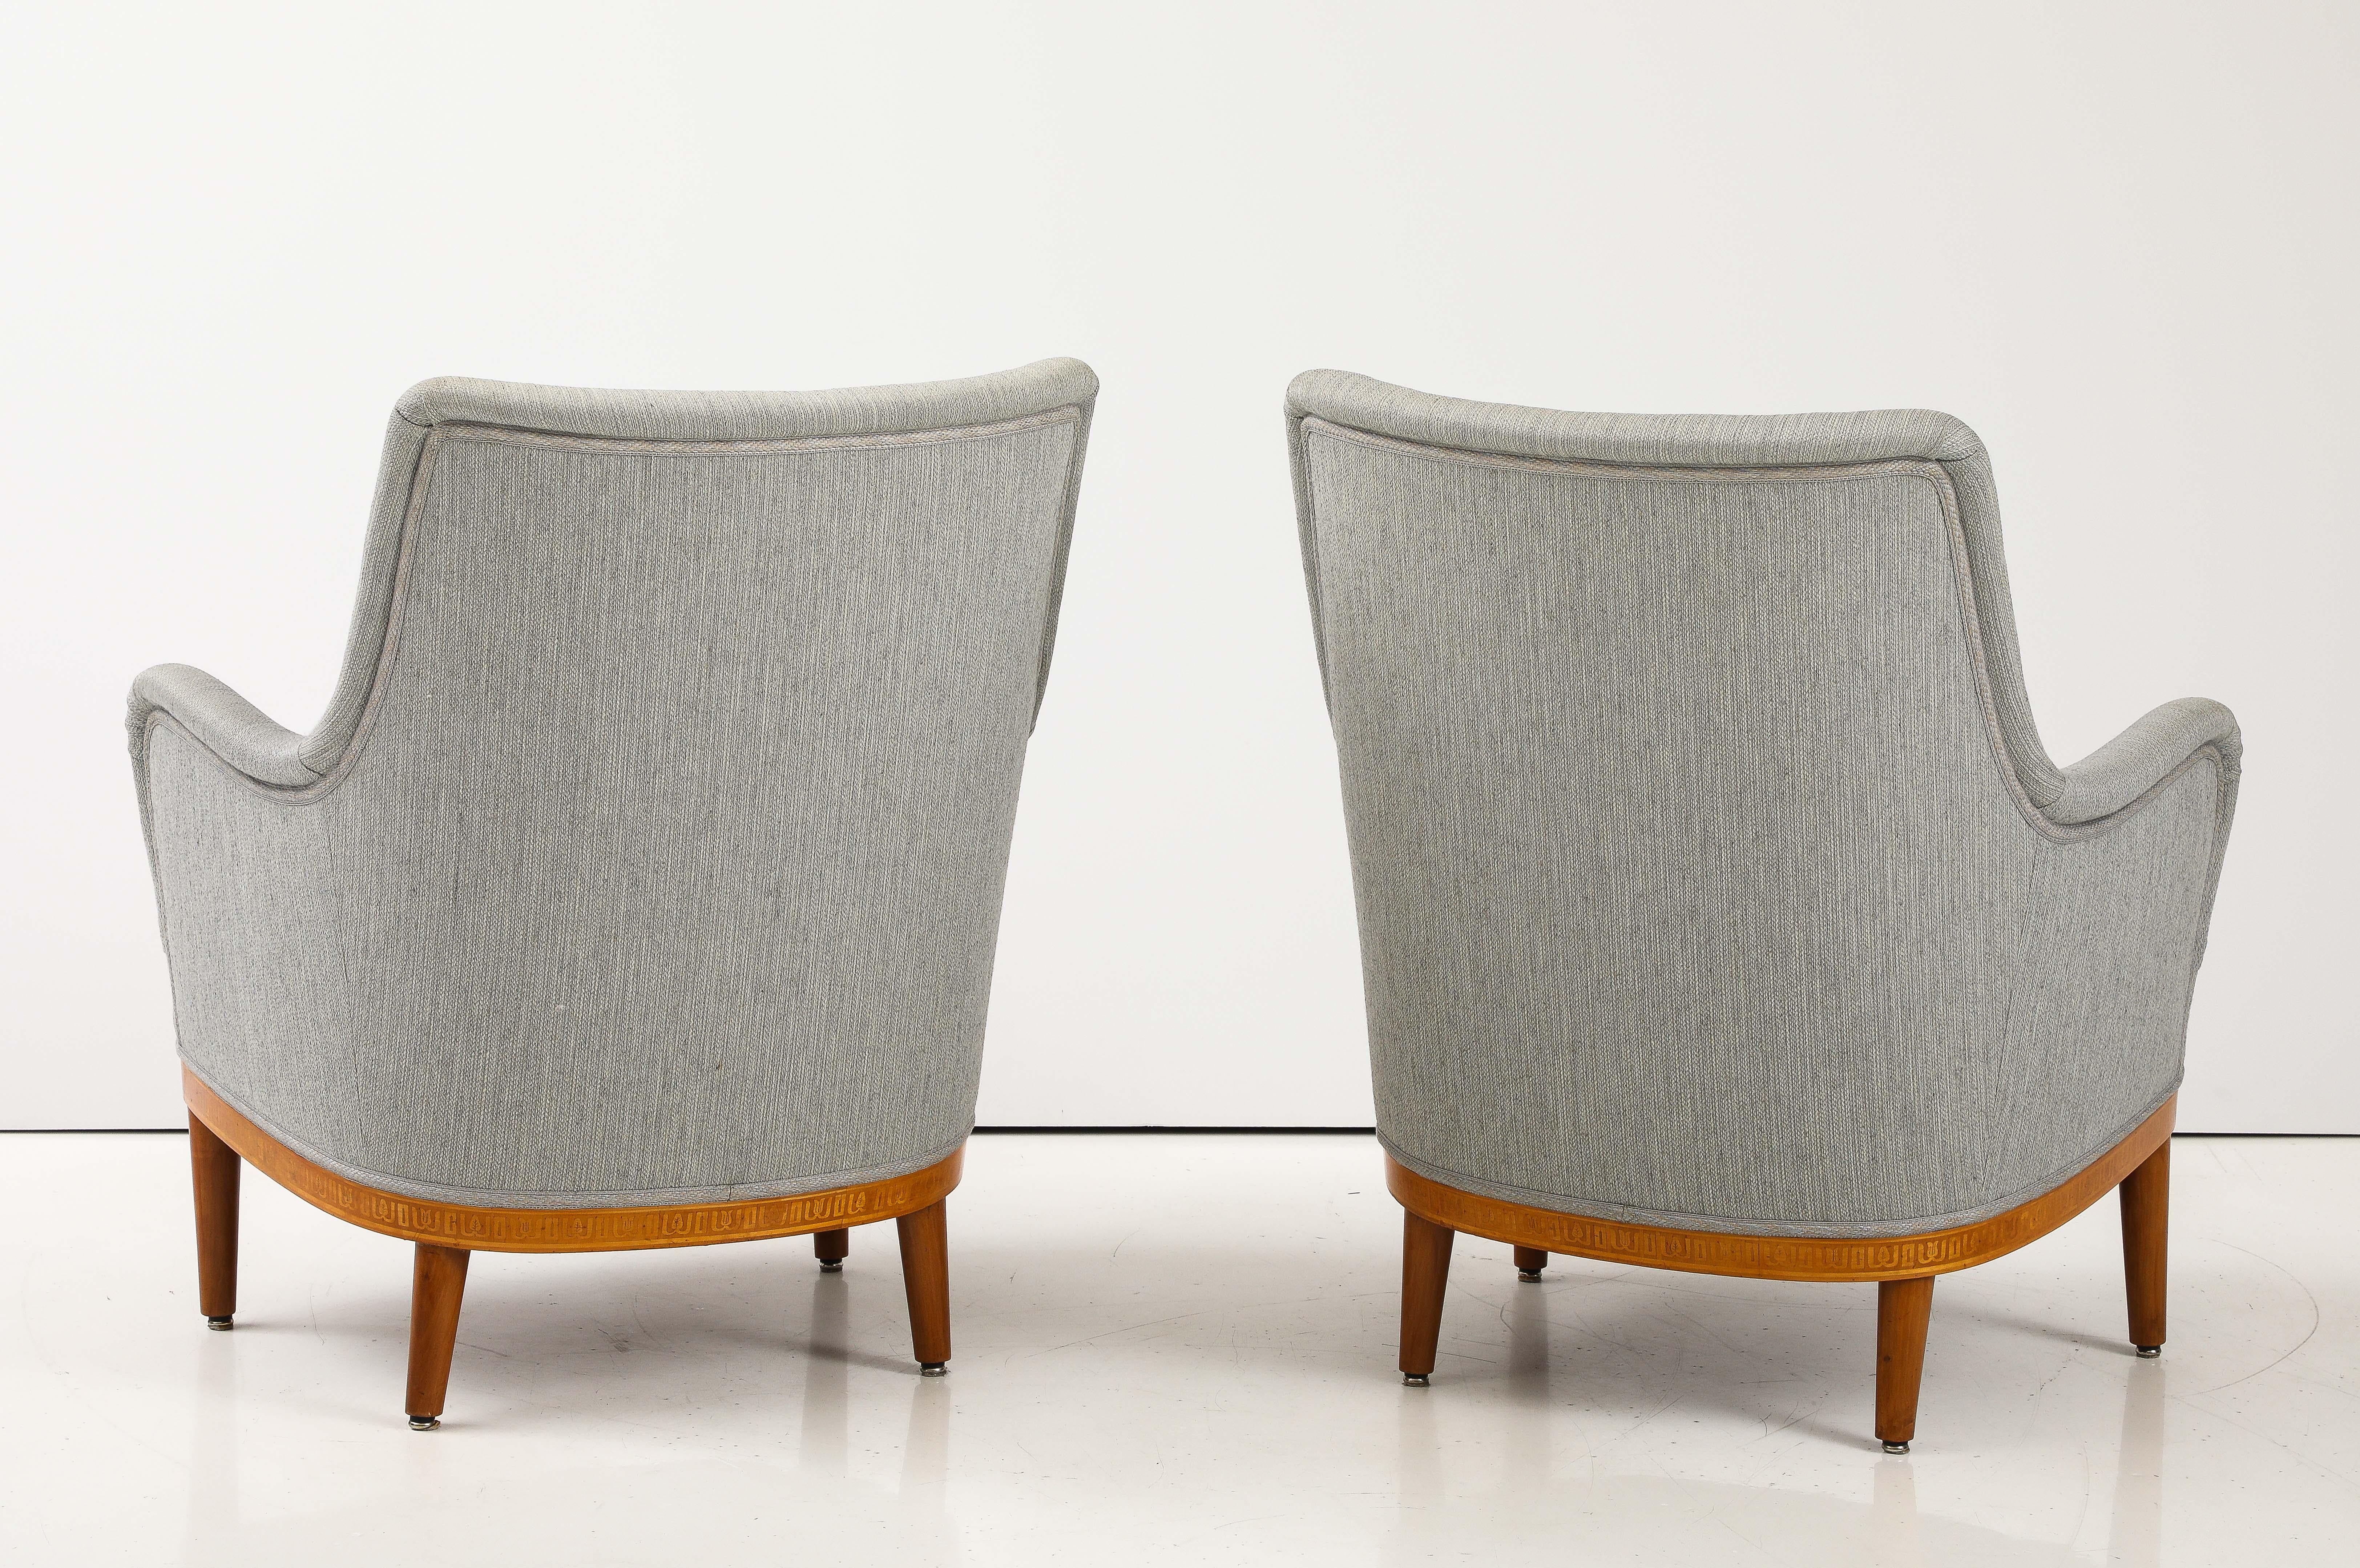 Ein Paar Carl Malmsten-Sessel, ca. 1940er Jahre (Skandinavische Moderne)